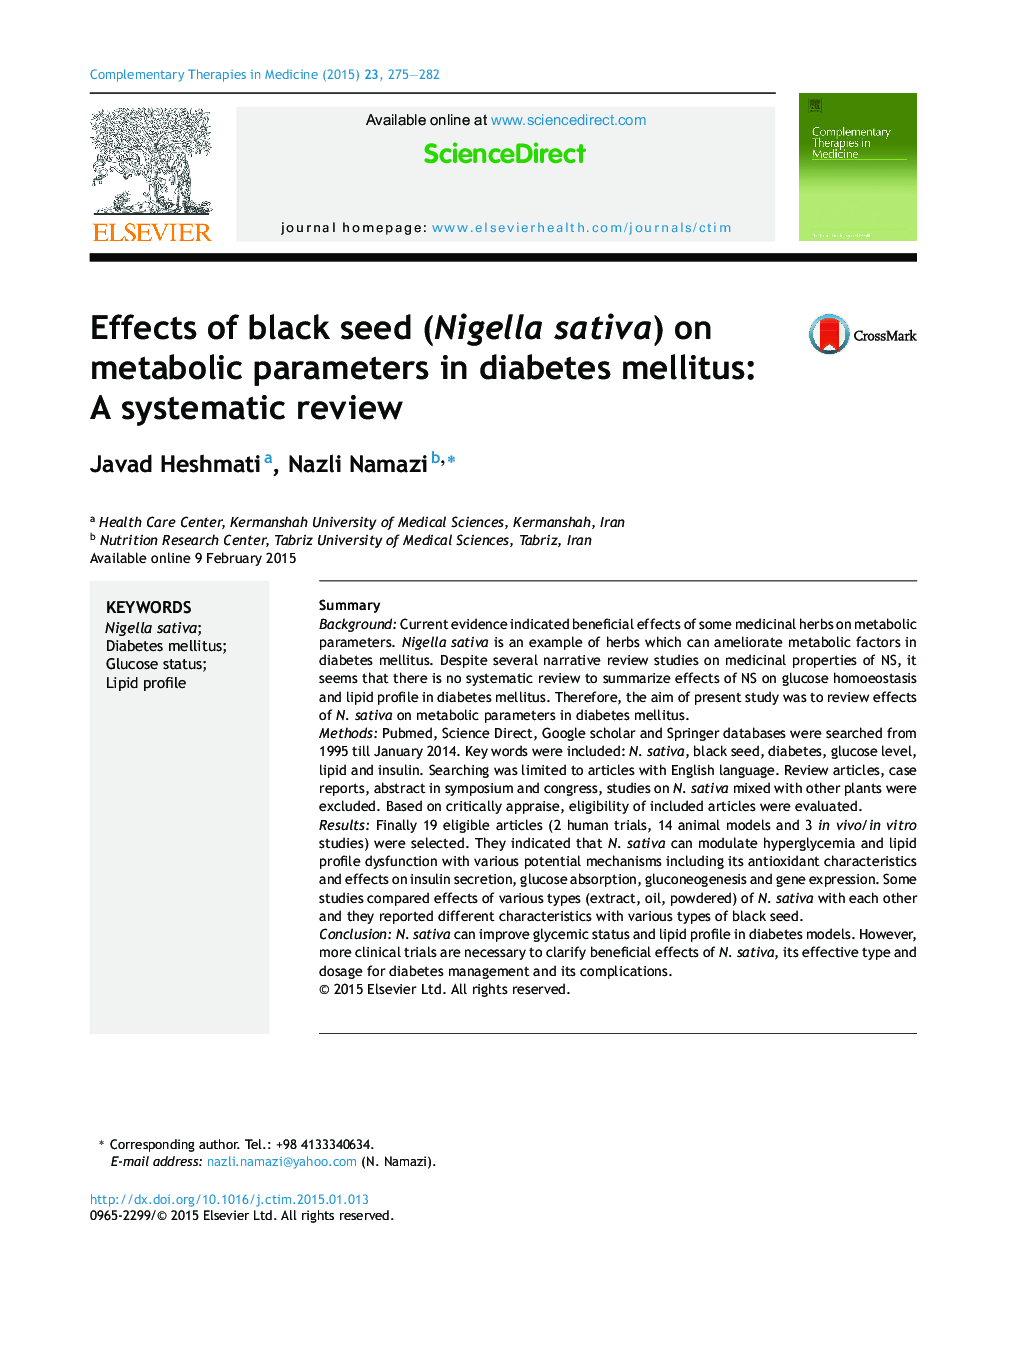 اثر دانه های سیاهدانه (Nigella sativa) بر پارامترهای متابولیک در دیابت نوع یک: بررسی سیستماتیک